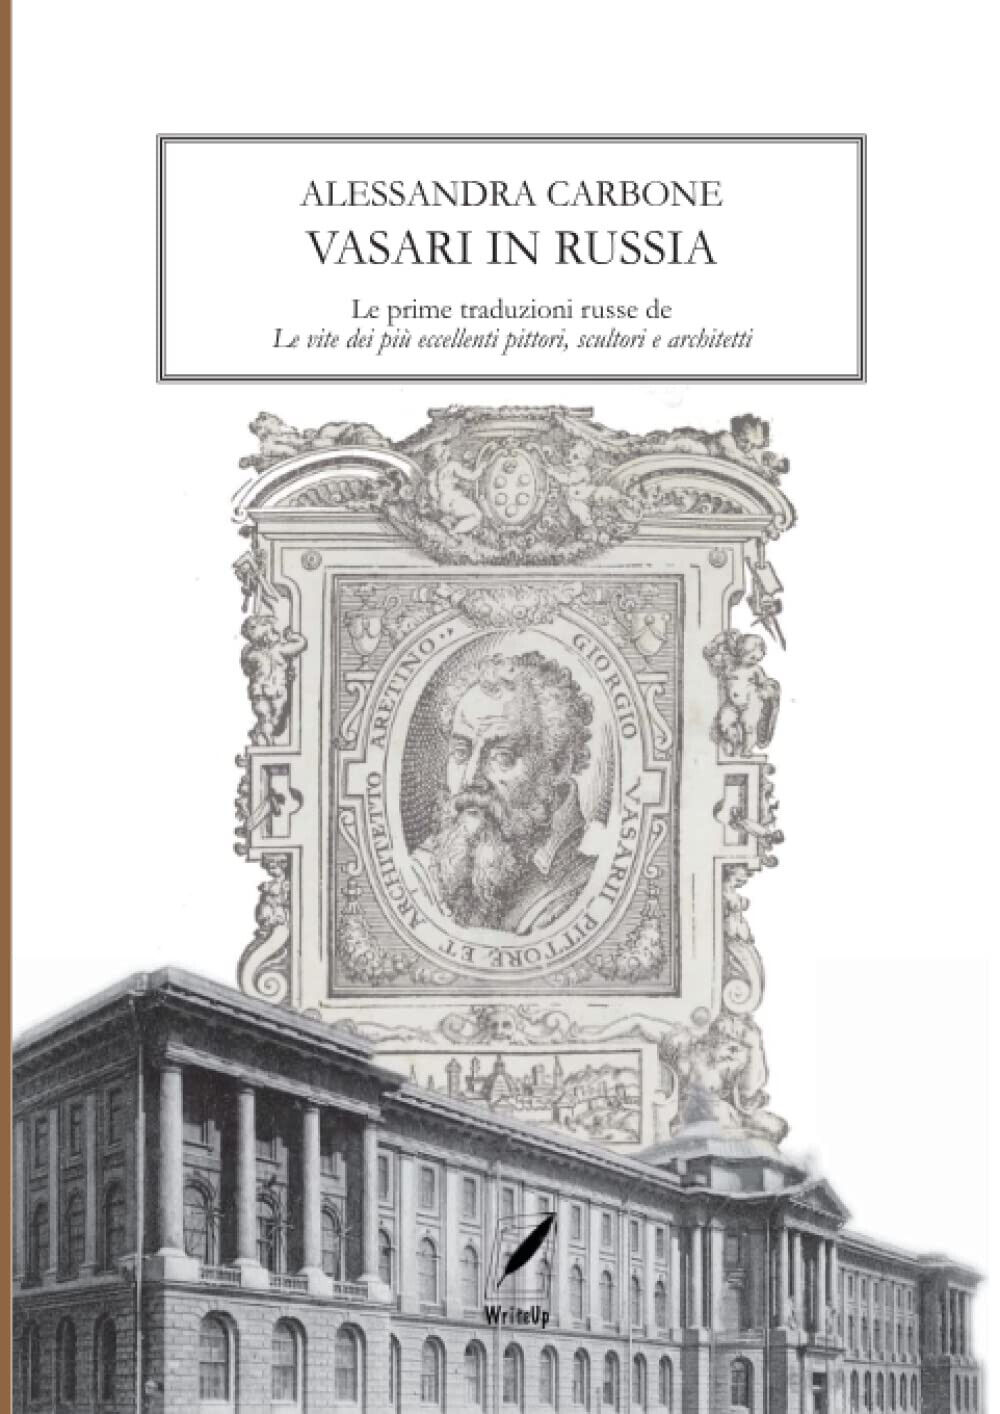 Vasari in Russia - Alessandra Carbone - WhiteUp, 2021